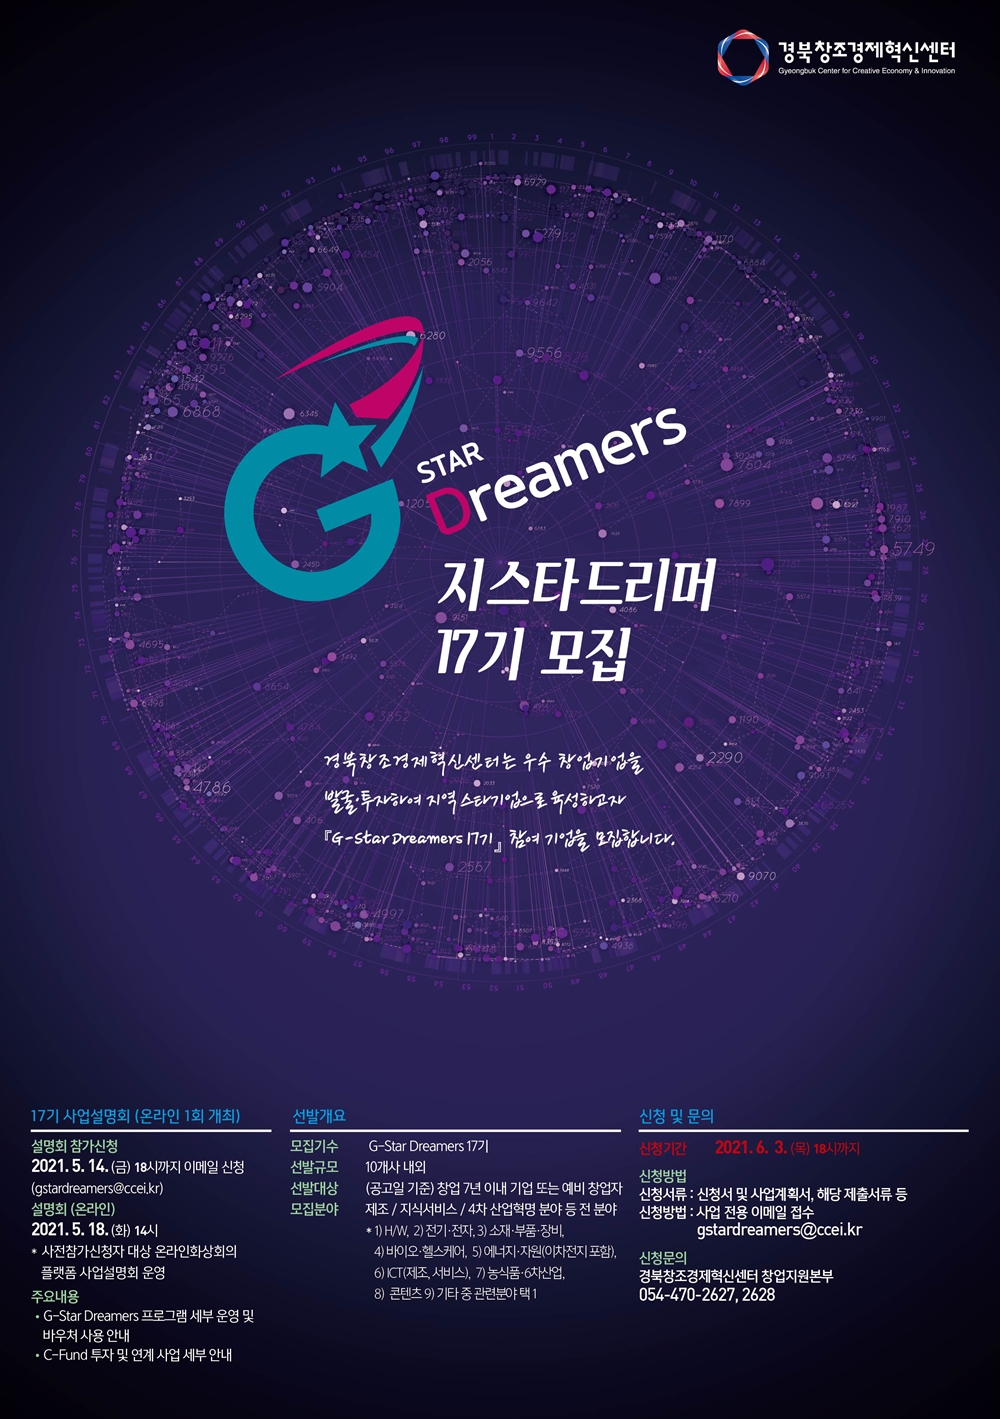 경북창조경제혁신센터 Gyeongbuk Center for Creative Economy & Innovation G STAR Dreamers 지스타드리머 17기 모집 경북창조경제혁신센터는 우수창업기업을 발굴투자하여 지역 스타기업으로 육성하고자 [G-Stars Dreamers 17기] 참여 기업을 모집합니다. 17기 사업설명회 (온라인 1회 개최) 설명회 참가신청 2021.5.14.(금) 18시까지 이메일 신청(gstardreamers@ccei.kr) 설명회(온라인) 2021.5.18(화) 14시 사전참가신청자 대상 온라인화상회의 플랫폼 사업설명회 운영 주요내용 G-Star Dreamers 프로그램 세부 운영 및 바우쳐 사용 안내 C-Fund 투자 및 연계 사업 세부 안내 선발개요 모집기수 G-Star Dreamers 17기 선발규모 10개사 내외 선발대상 (공고일 기준) 창업 7년 이내 기업 또는 예비 창업자 모집분야 제조 / 지식서비스 / 4차 산업혁명 분야 등 전 분야 1)H/W 2)전기,전자 3) 소재,부품, 장비 4) 바이오, 헬스케어, 5) 에너지, 자원(이차전지 포함) 6) ICT(제조, 서비스), 7) 농식품, 6차산업 8) 콘텐츠 9)기타 중 관련 분야 택1 신청 및 문의 신청기간 2021.6.3 (목) 18시까지 신청방법 신청서류: 신청서 및 사업계획서, 해당 제출서류 등 신청방법 사업 전용 이메일 접수 gstardreamers@ccei.kr 신청문의 경북창조경제혁신센터 창업지원본부 054-470-2627, 2628